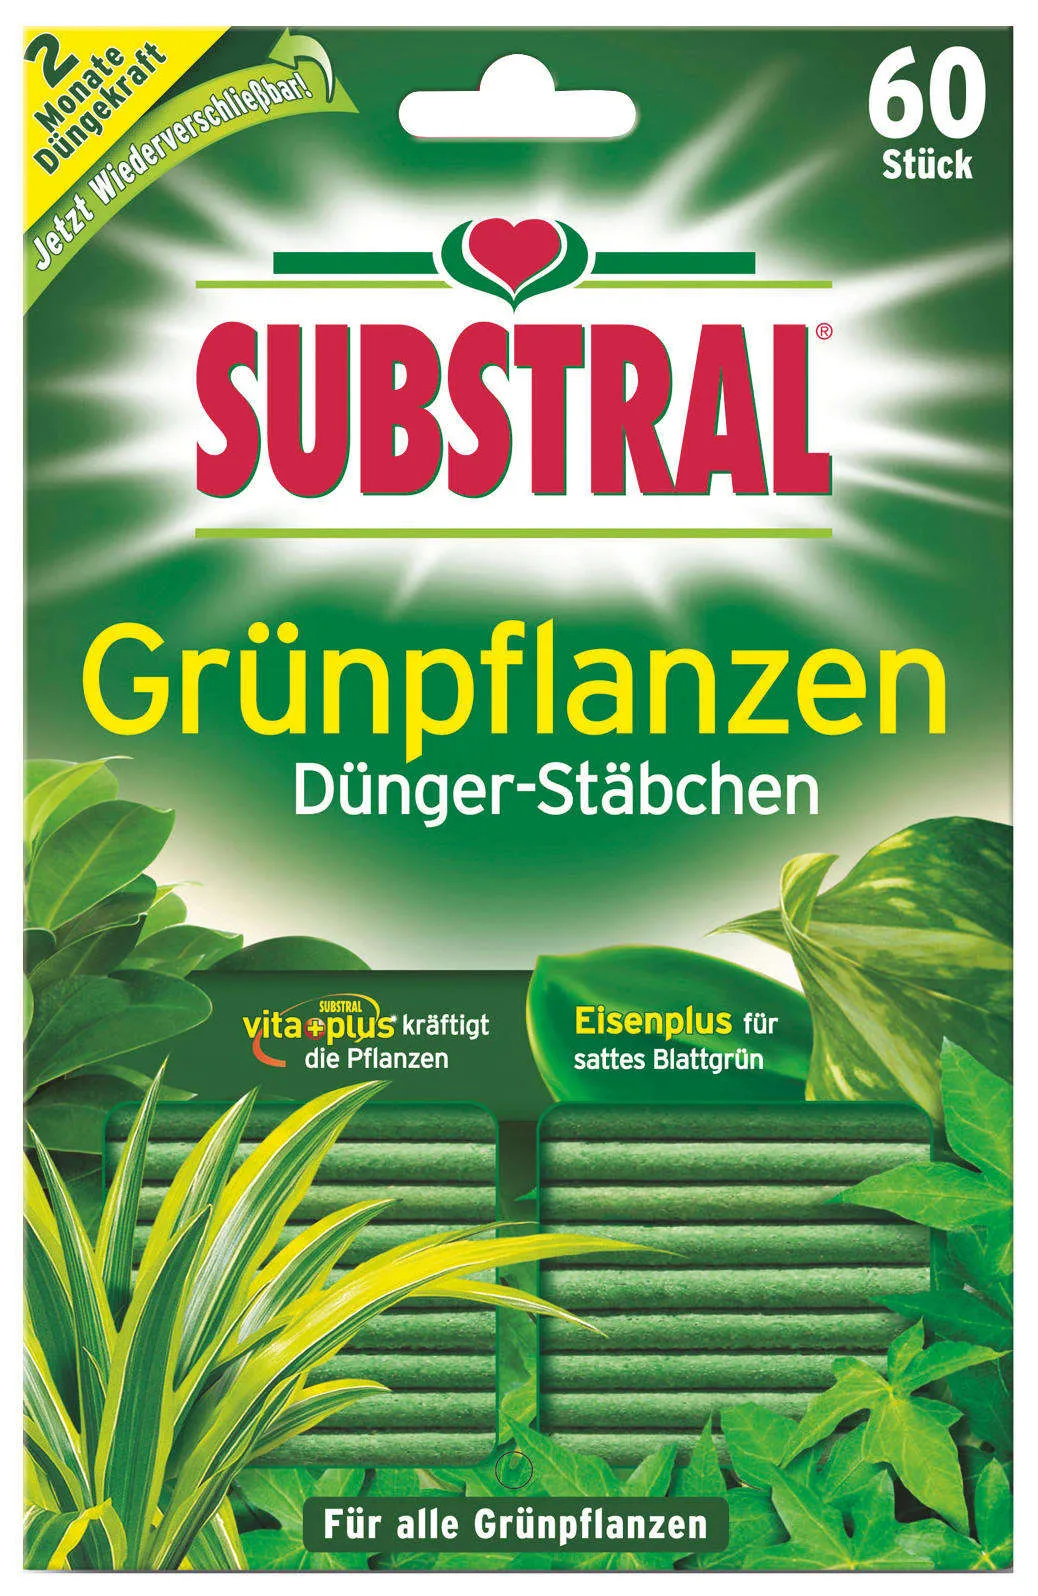 SUBSTRAL Dünger-Stäbchen für Grünpflanzen